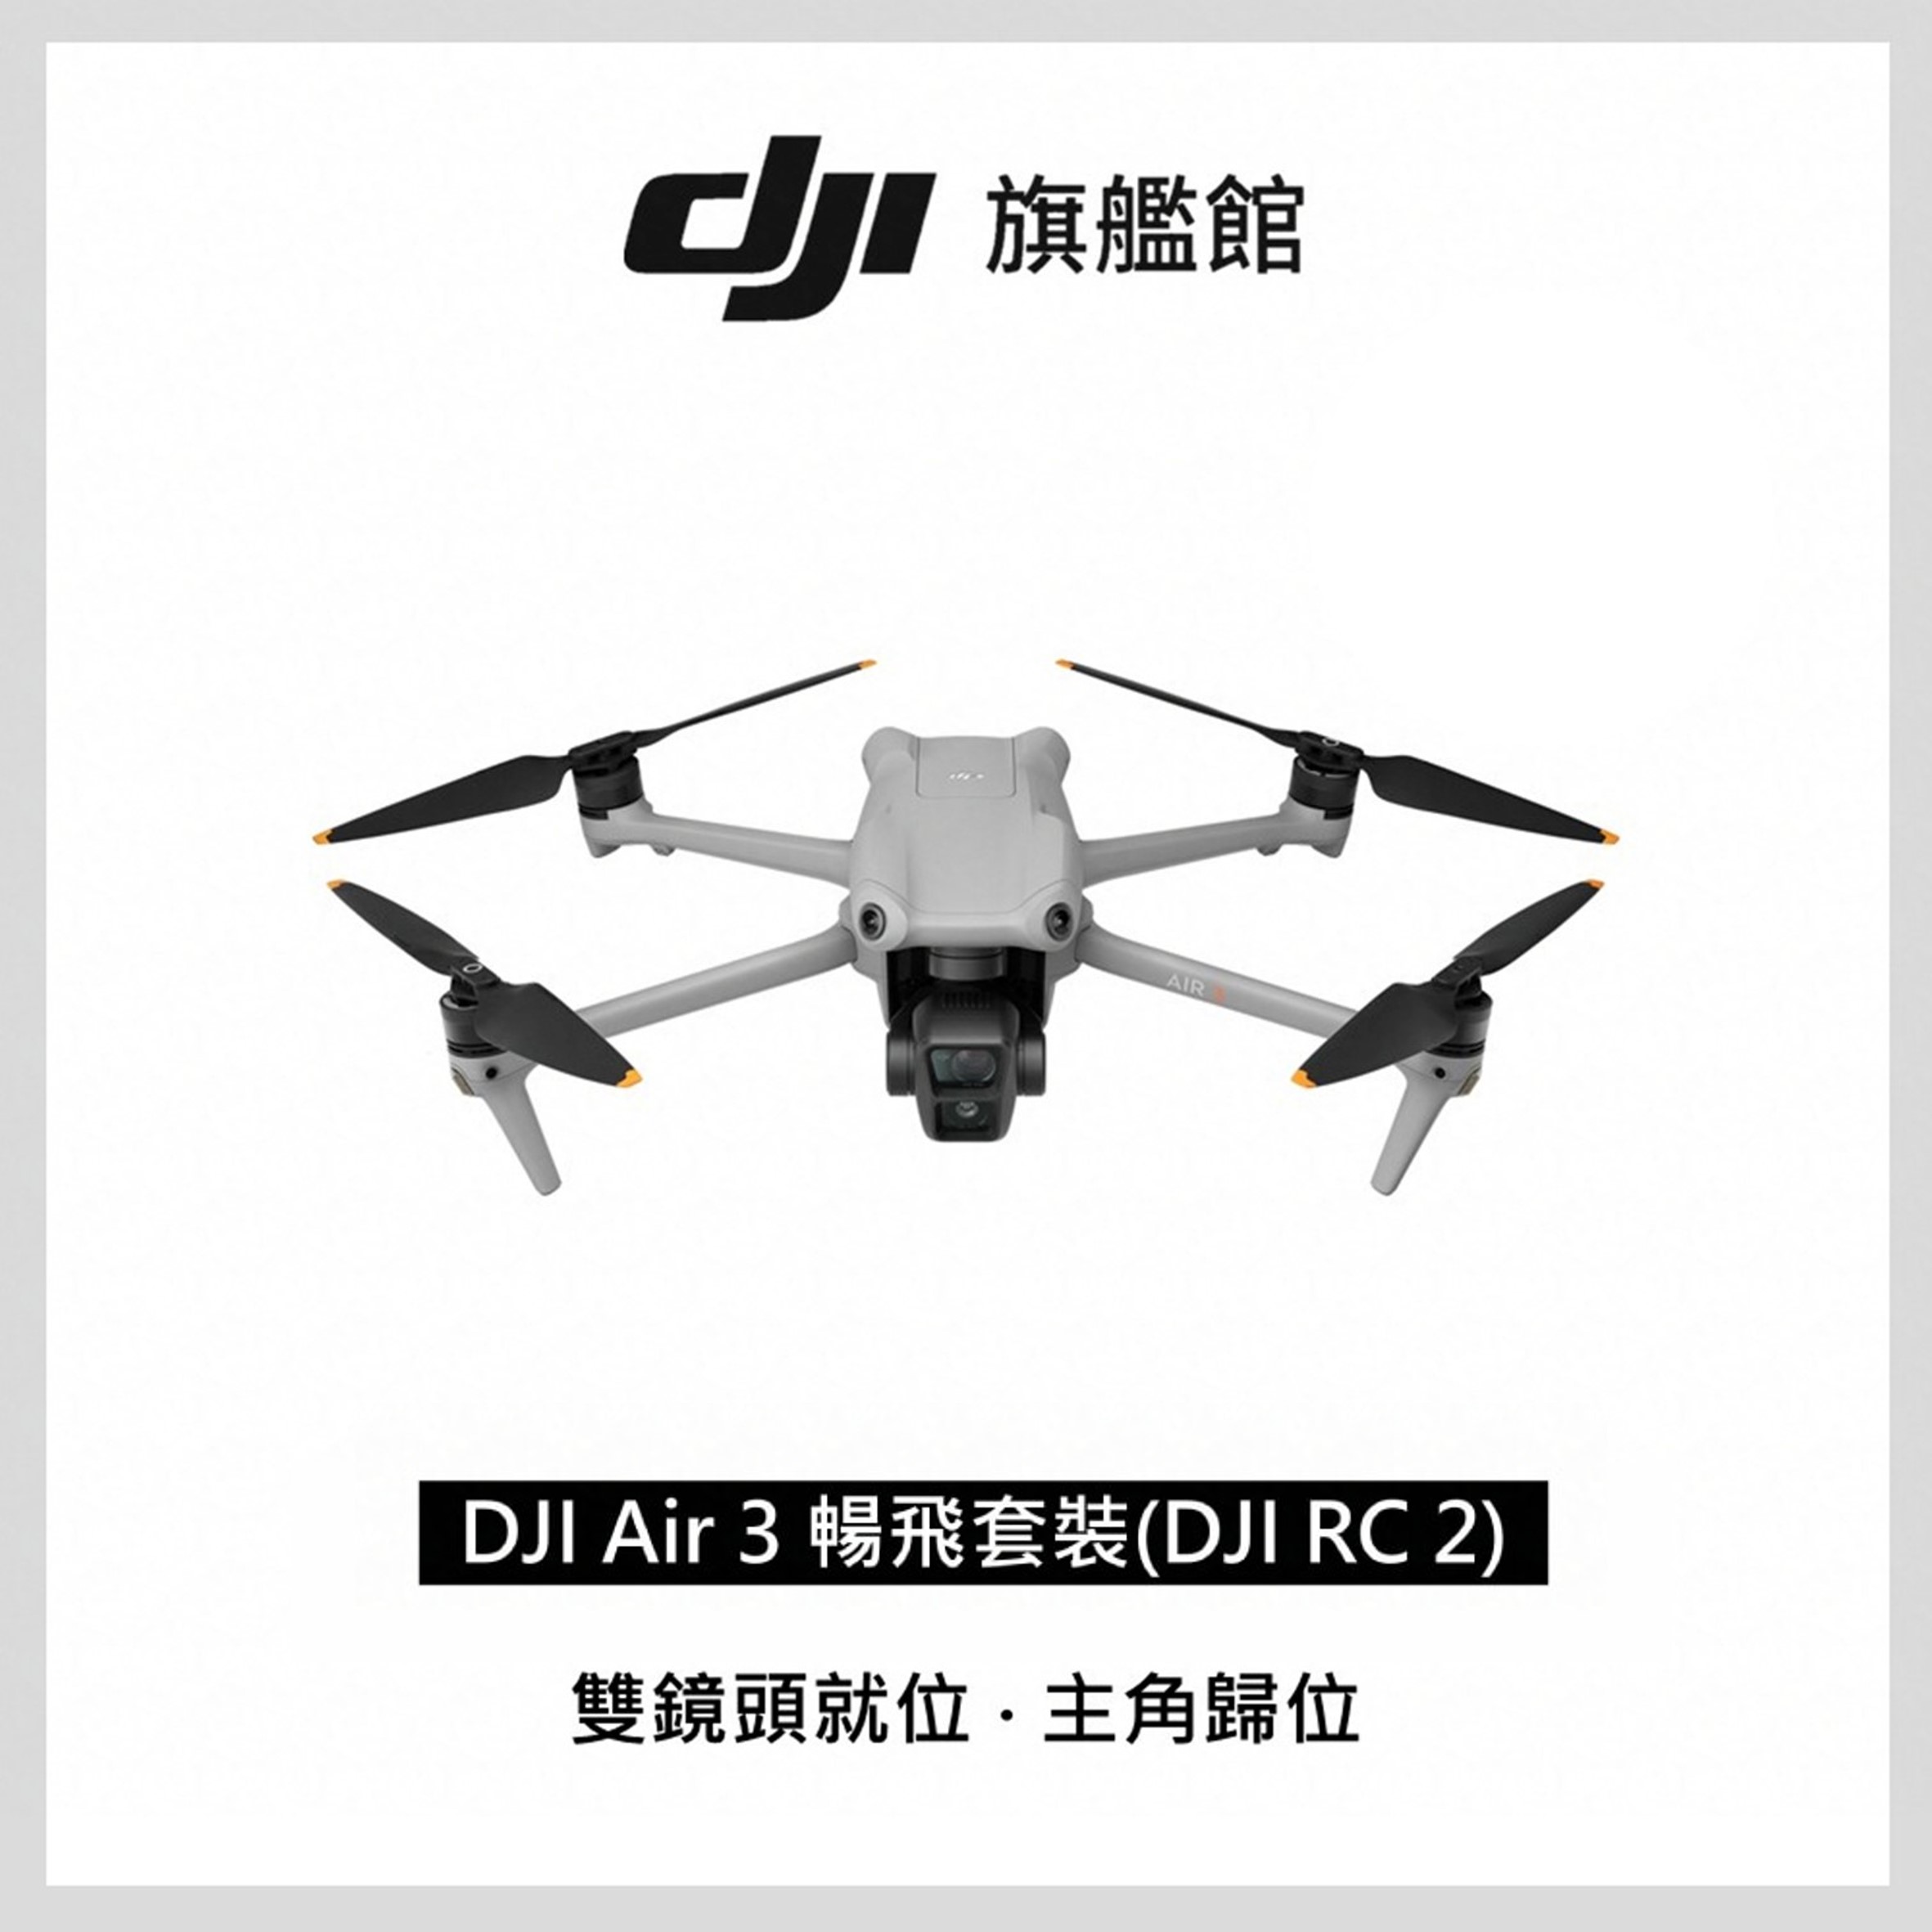 DJI AIR 3空拍機-套裝版(DJI RC2)